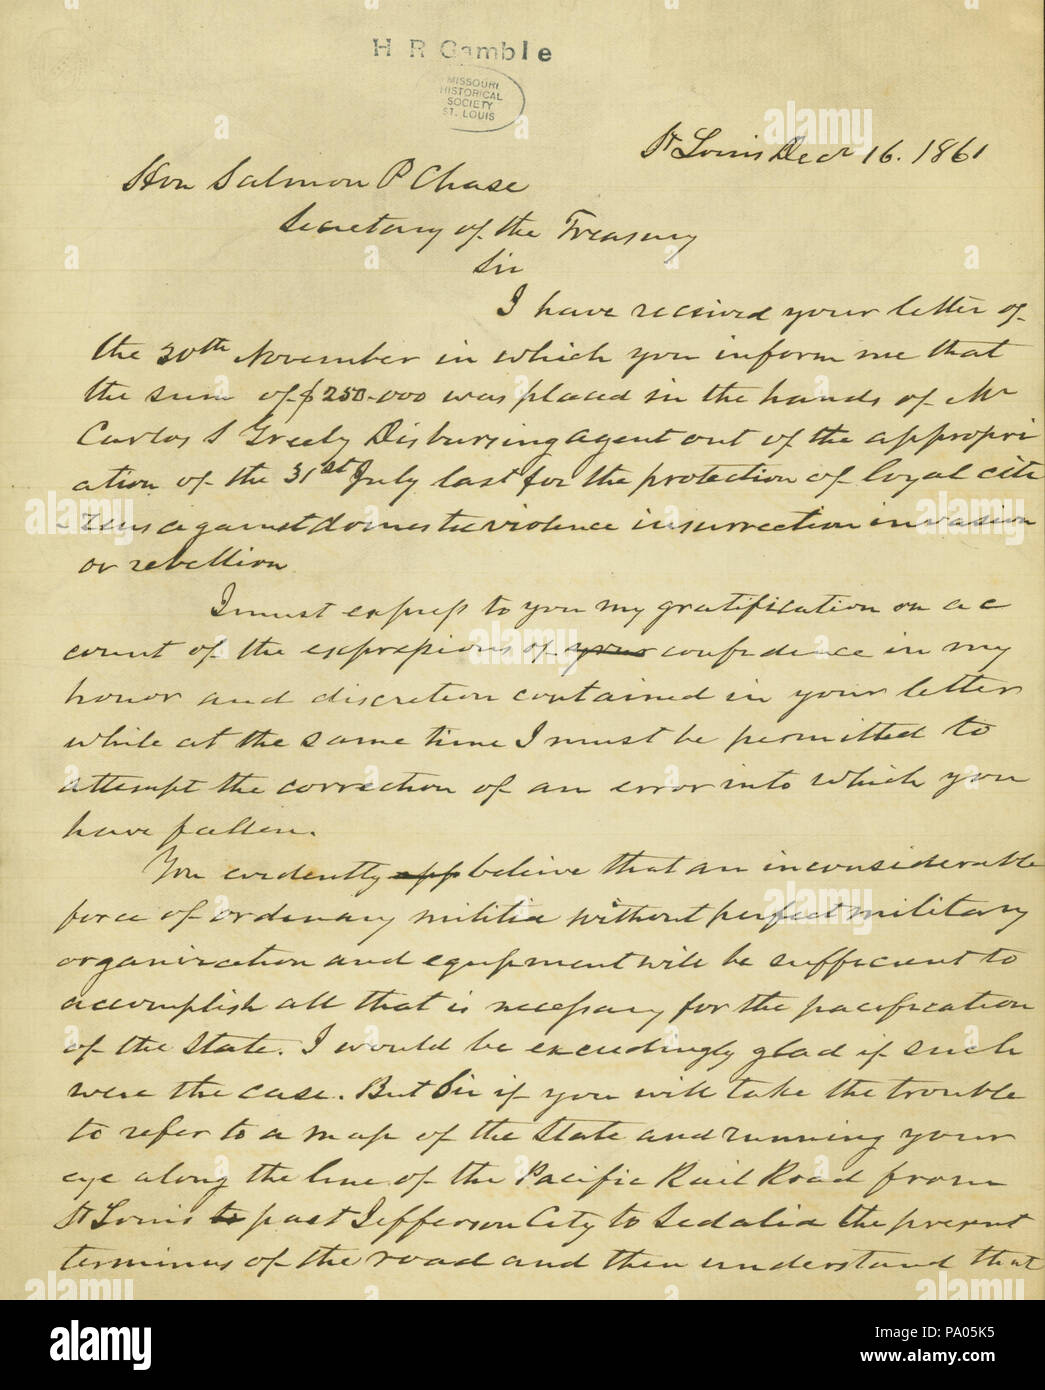 590 Projet de lettre de Hamilton R. Gamble, Saint Louis, à l'honorable Salmon P. Chase, secrétaire du Trésor, le 16 décembre 1861 Banque D'Images